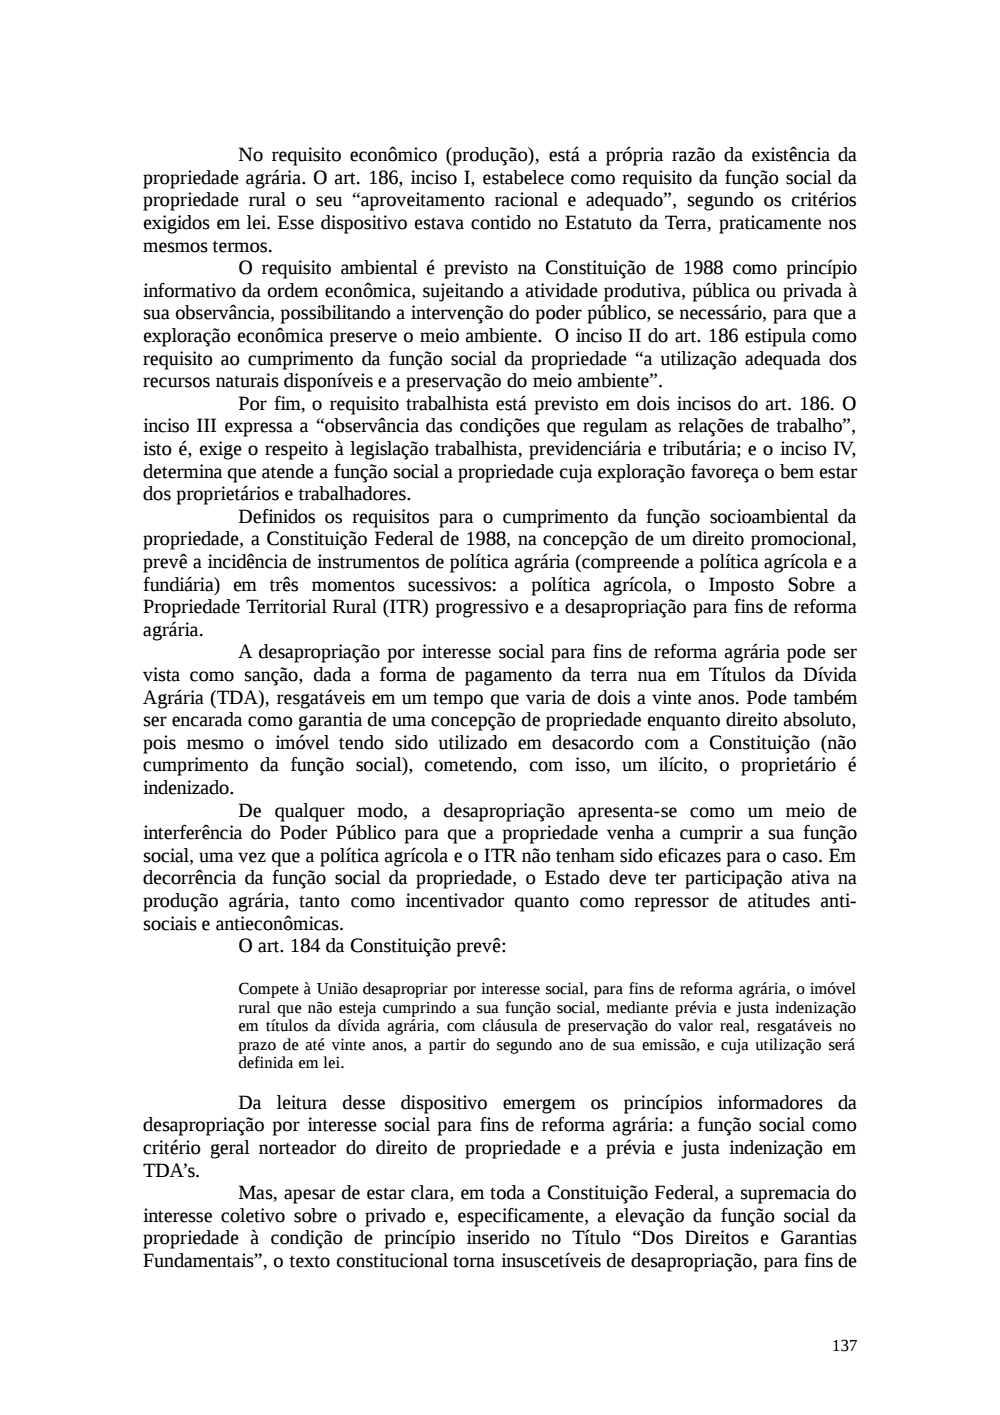 Page 137 from Relatório final da comissão